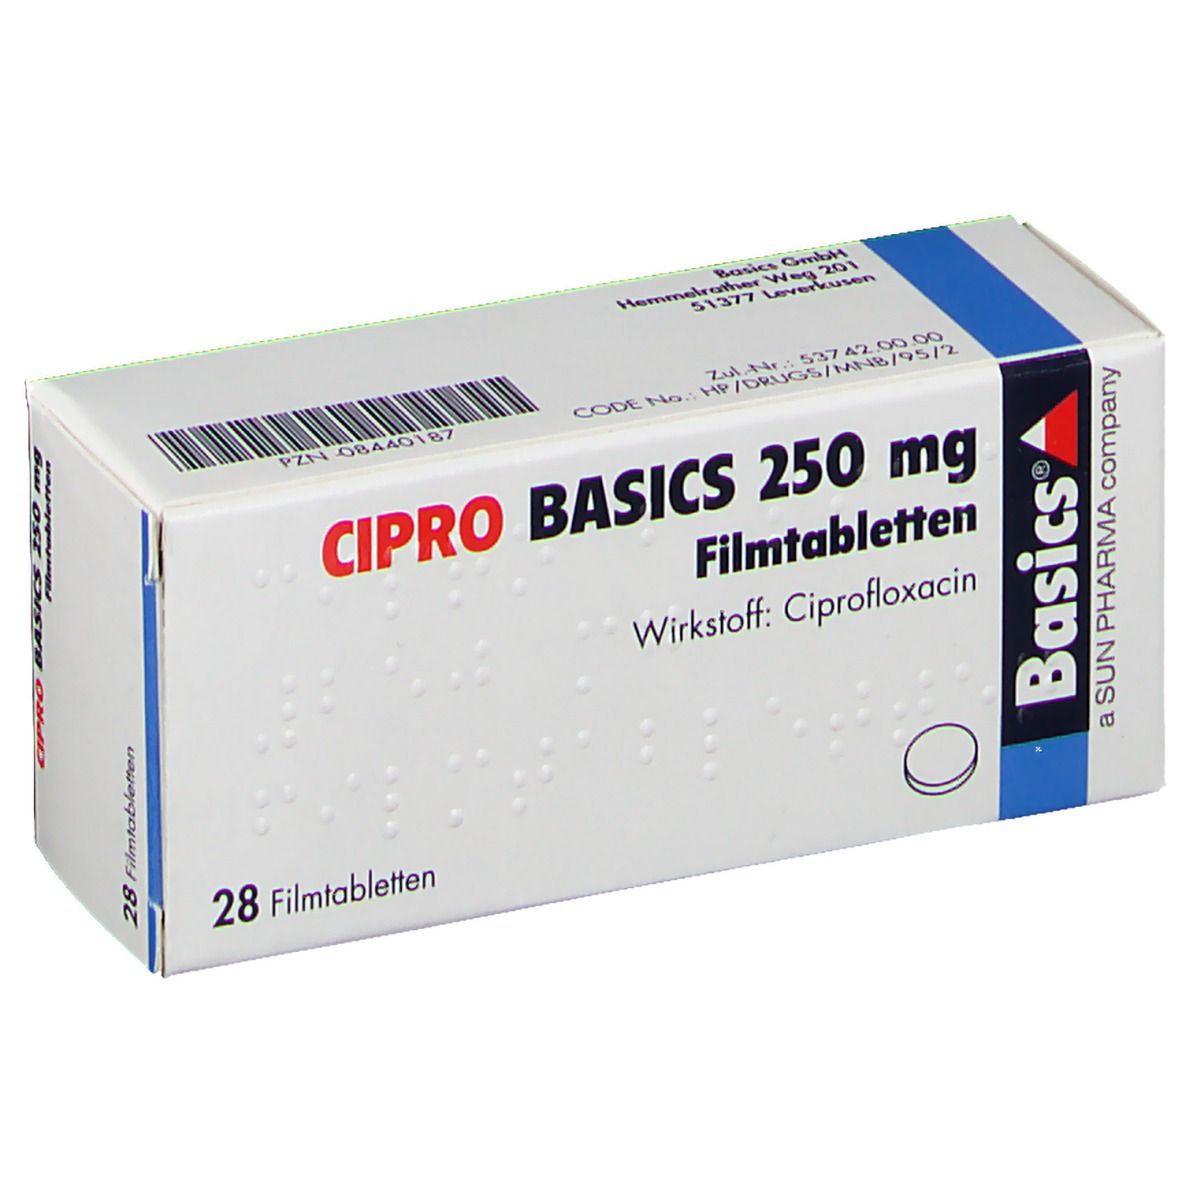 CIPRO BASICS 250 mg 